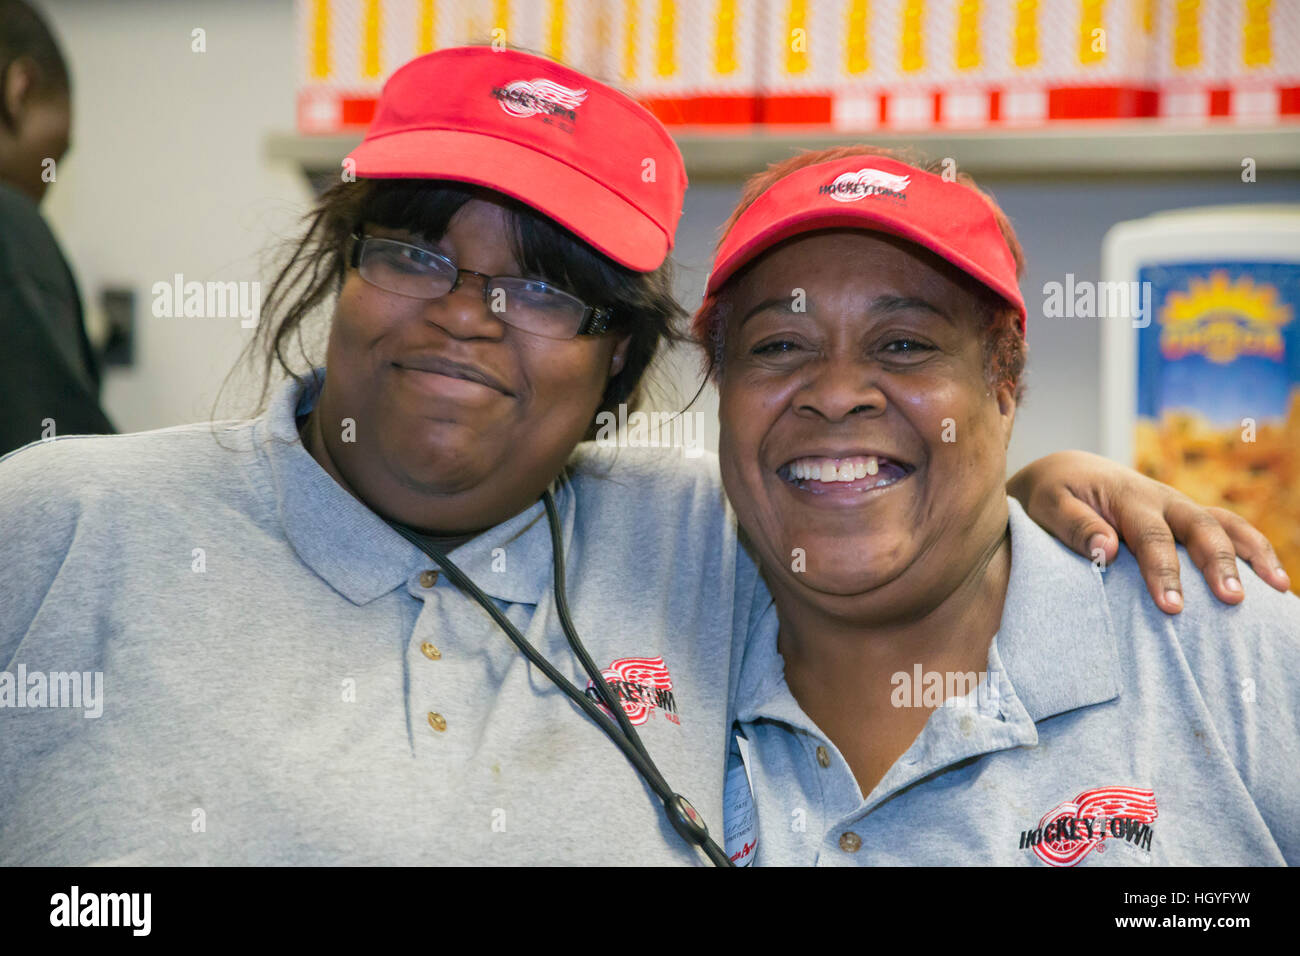 Detroit, Michigan - Deux travailleurs posent pour une photo à un fast-food à l'intérieur de Joe Louis Arena. Banque D'Images